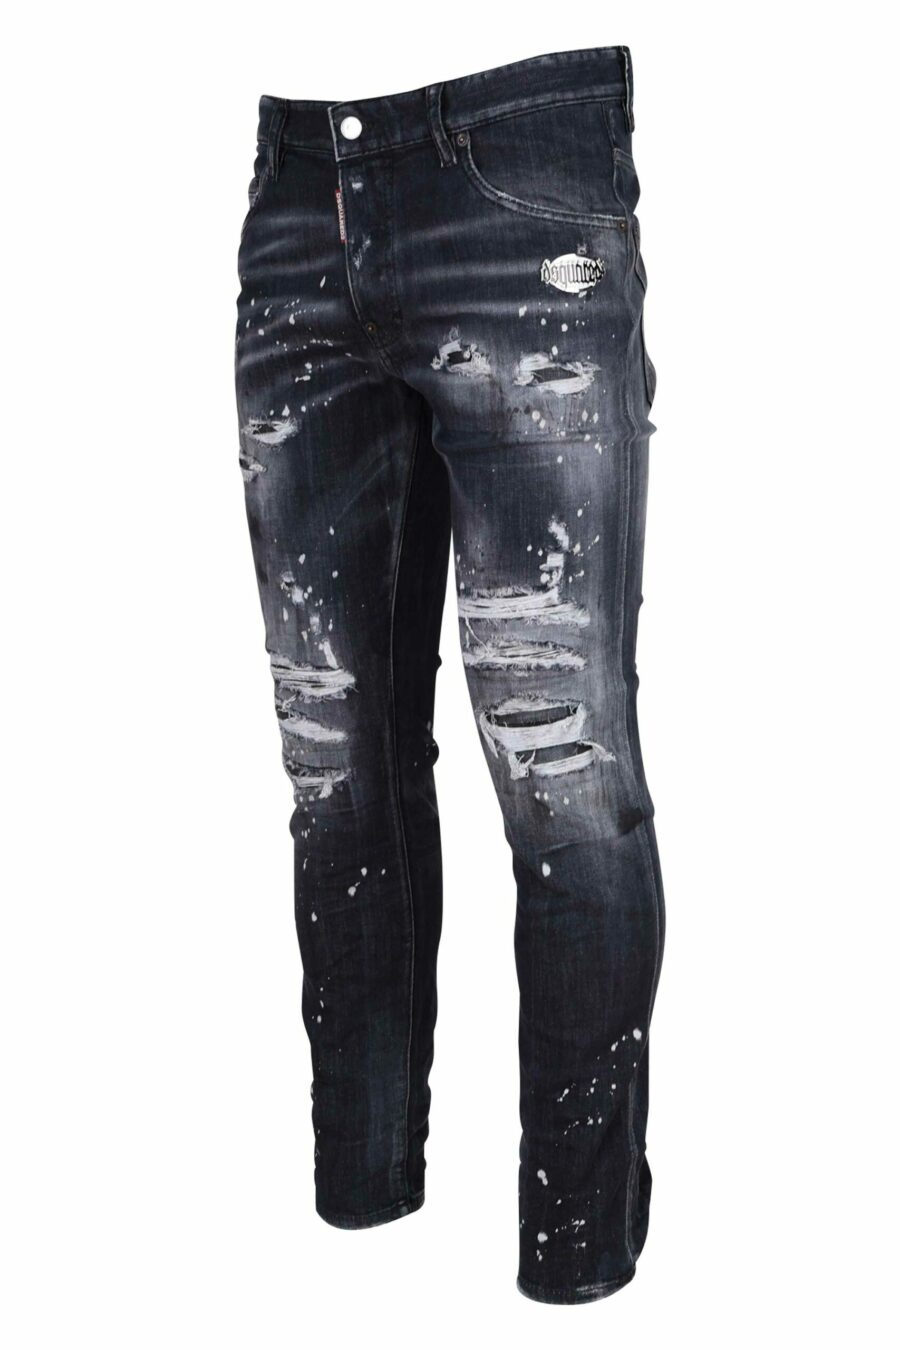 Schwarze "Skater-Jeans" mit Rissen - 8054148284084 1 skaliert